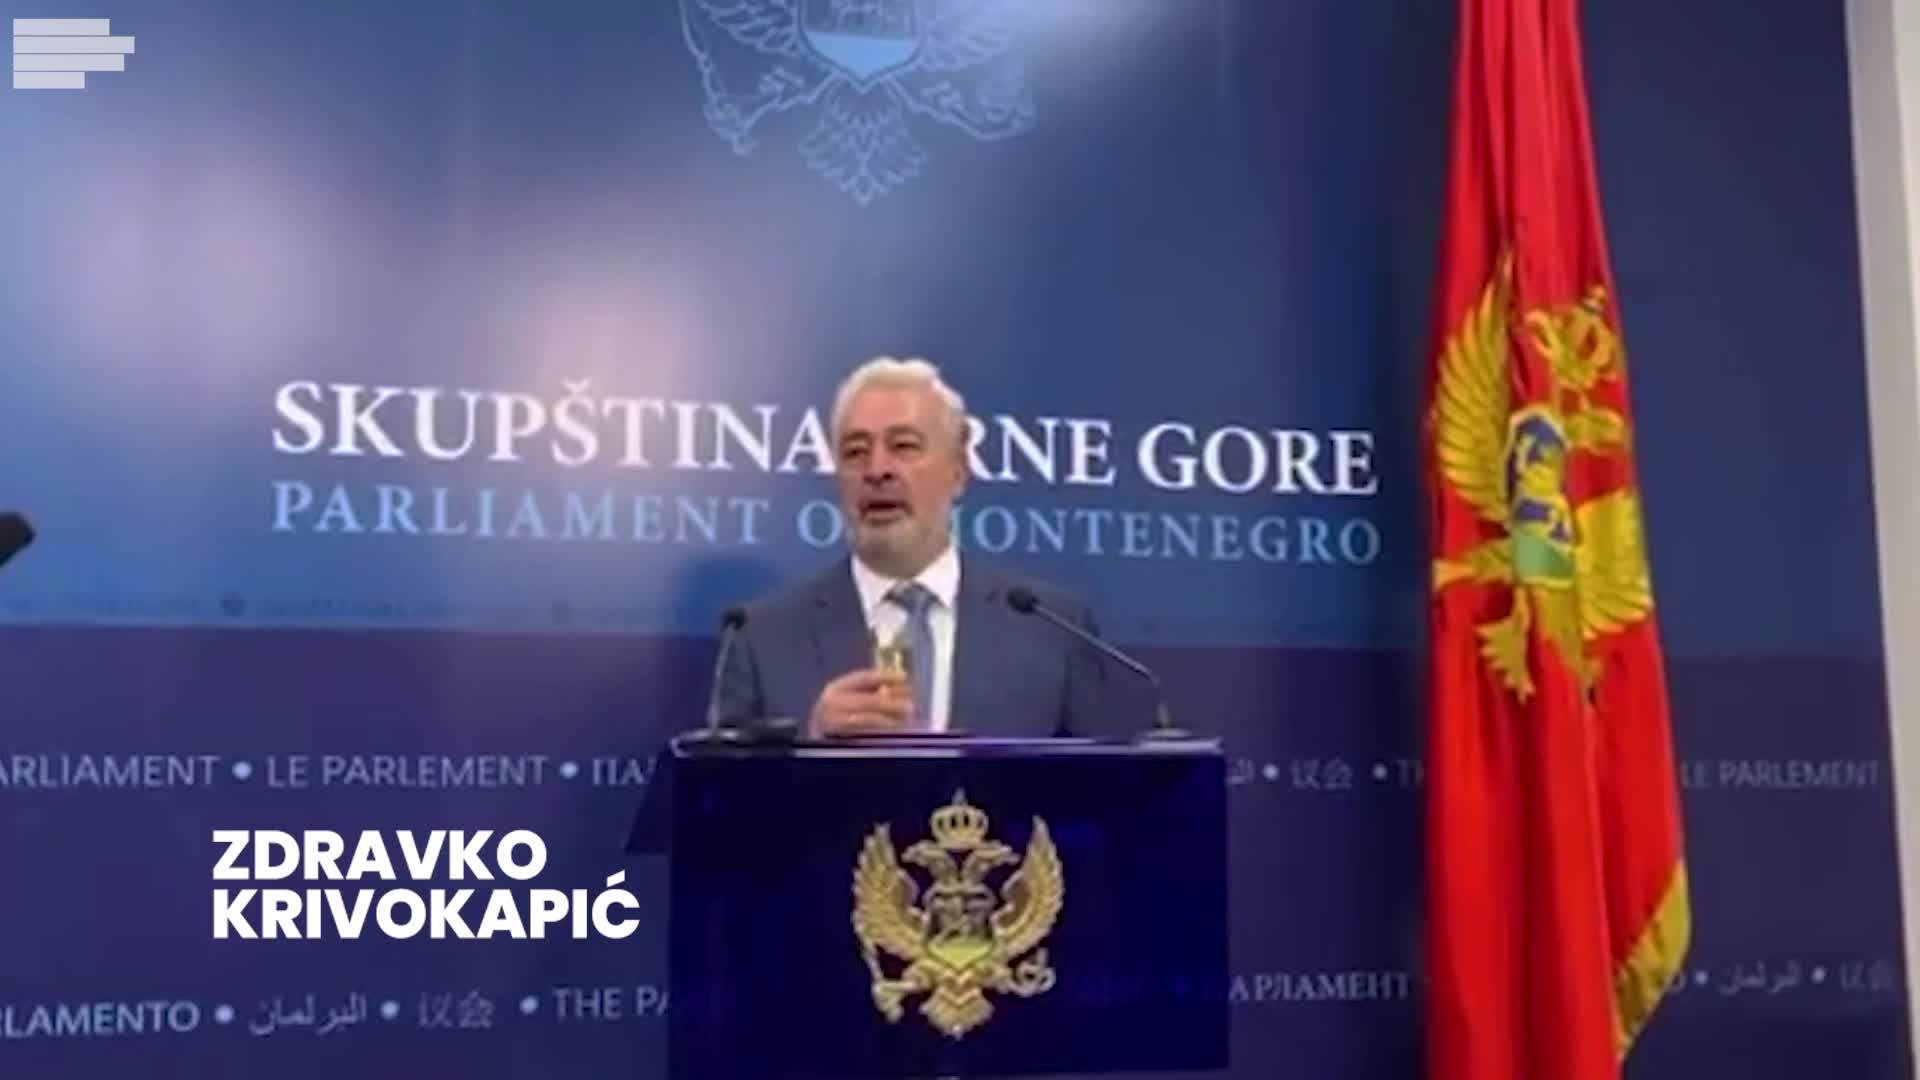  Skupština Crtna Gora konstitutivna sednica Zdravko Krivokapić izjava video 